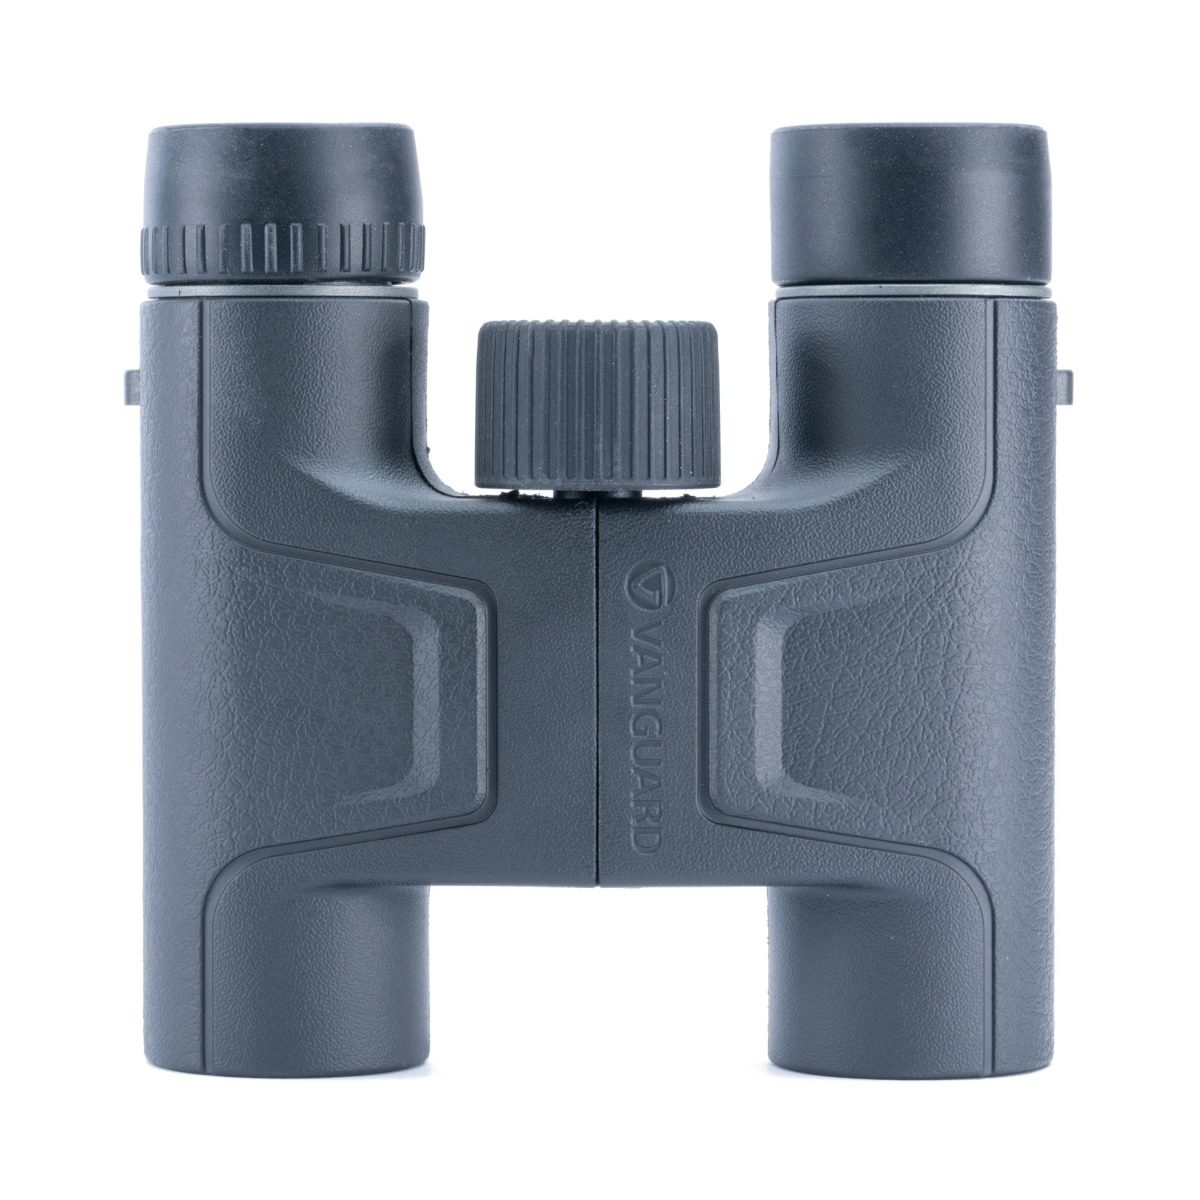 Vanguard VESTA 10X25 Binoculars